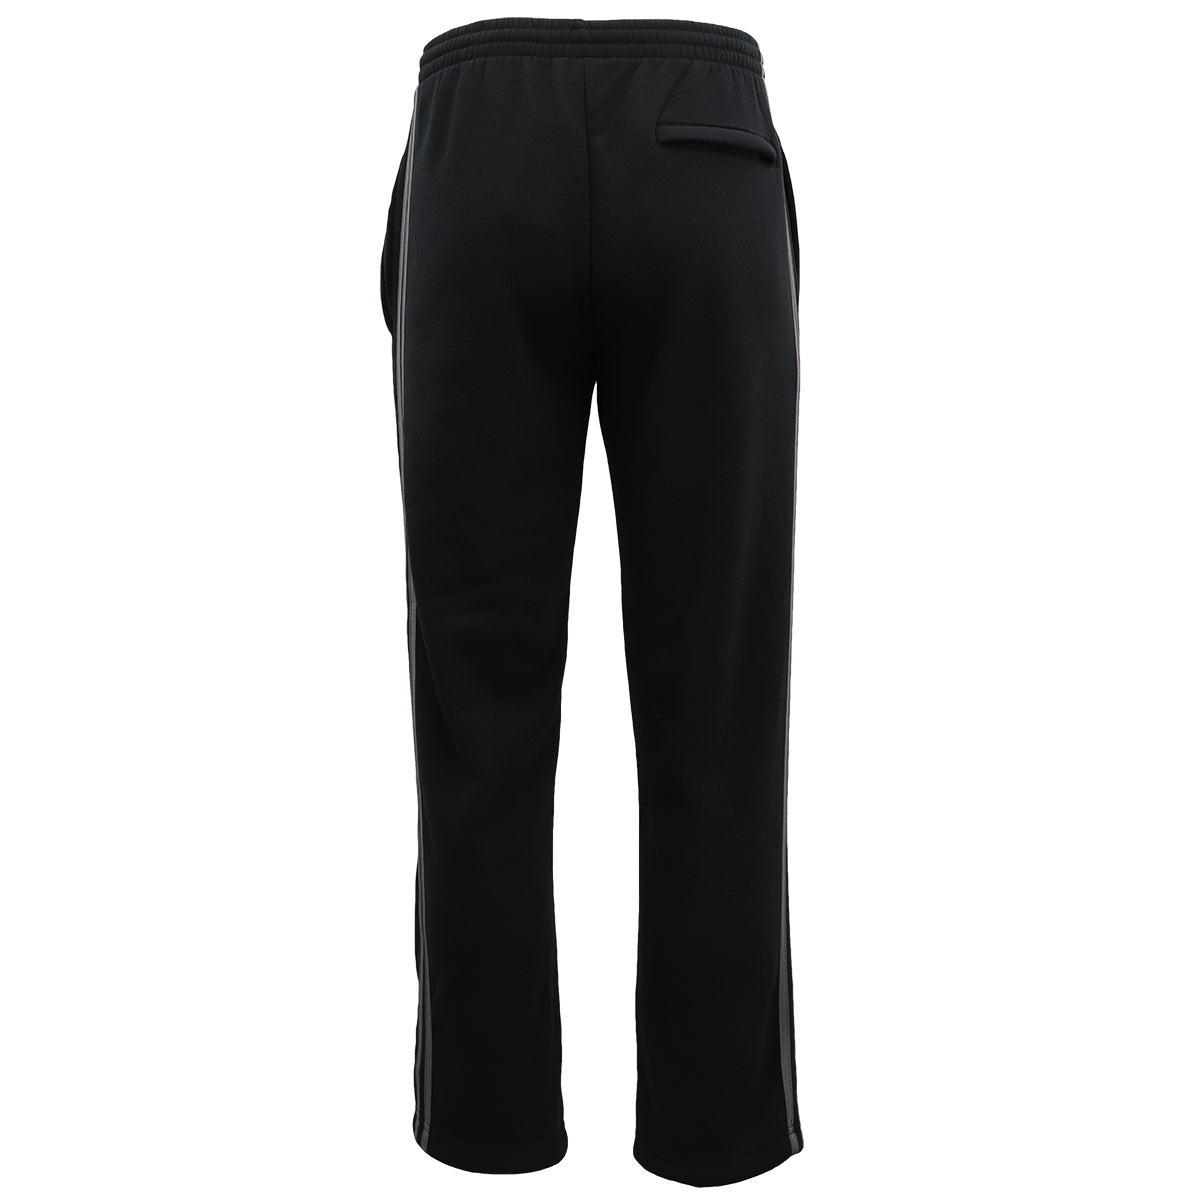 Men's Fleece Casual Sports Track Pants w Zip Pocket Striped Sweat Trousers S-6XL, Navy, 6XL